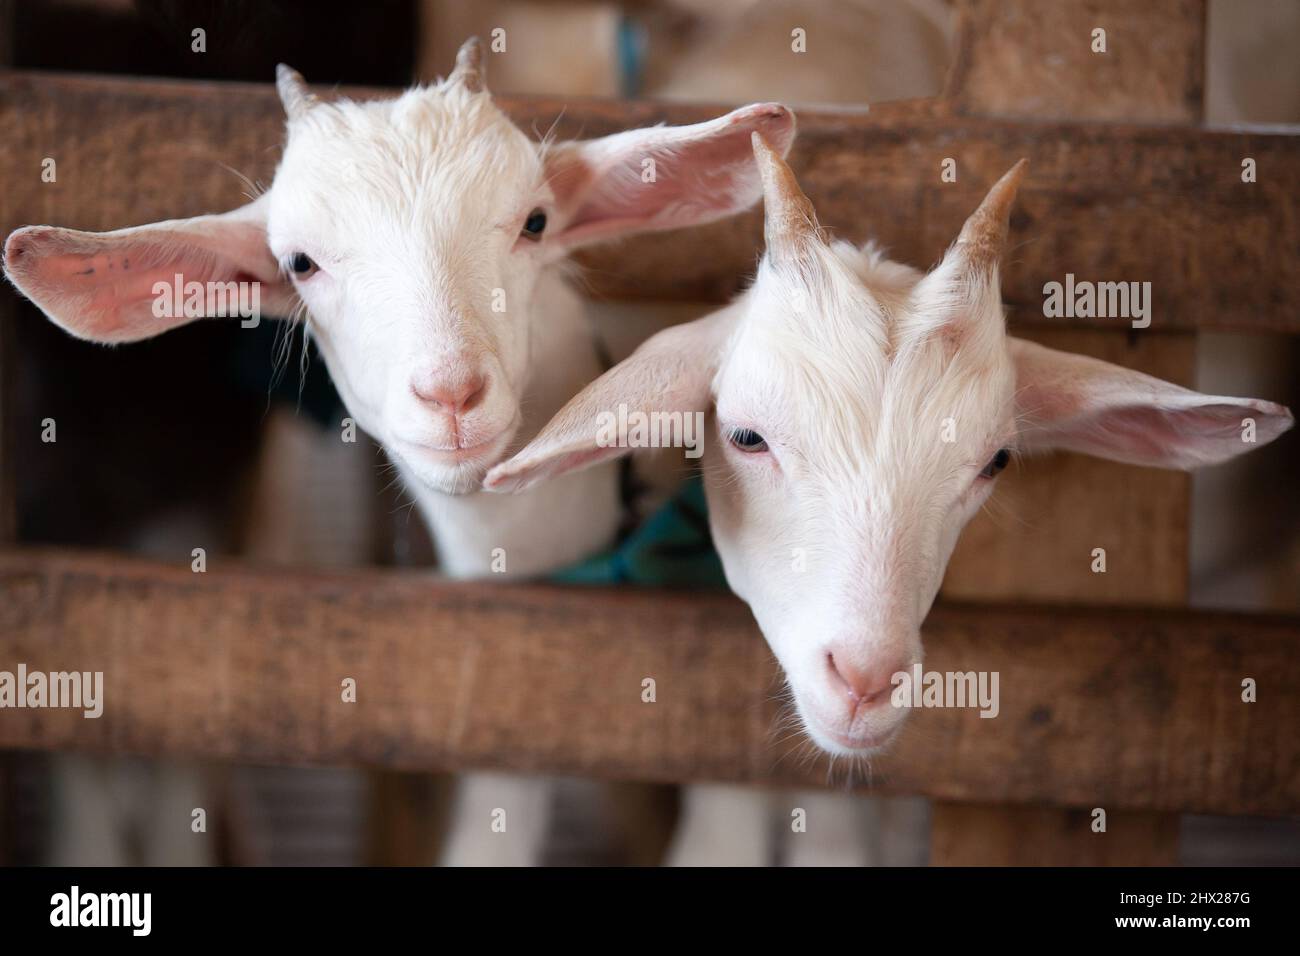 Fröhliche weiße Ziegenkinder, die in einem Holzstand auf einem lokalen Bauernhof herumstehen oder spielen. Konzepte für Landwirtschaft, Viehzucht, Ziegenmilch. Nahaufnahme. Weicher Fokus auf Kinder. Stockfoto